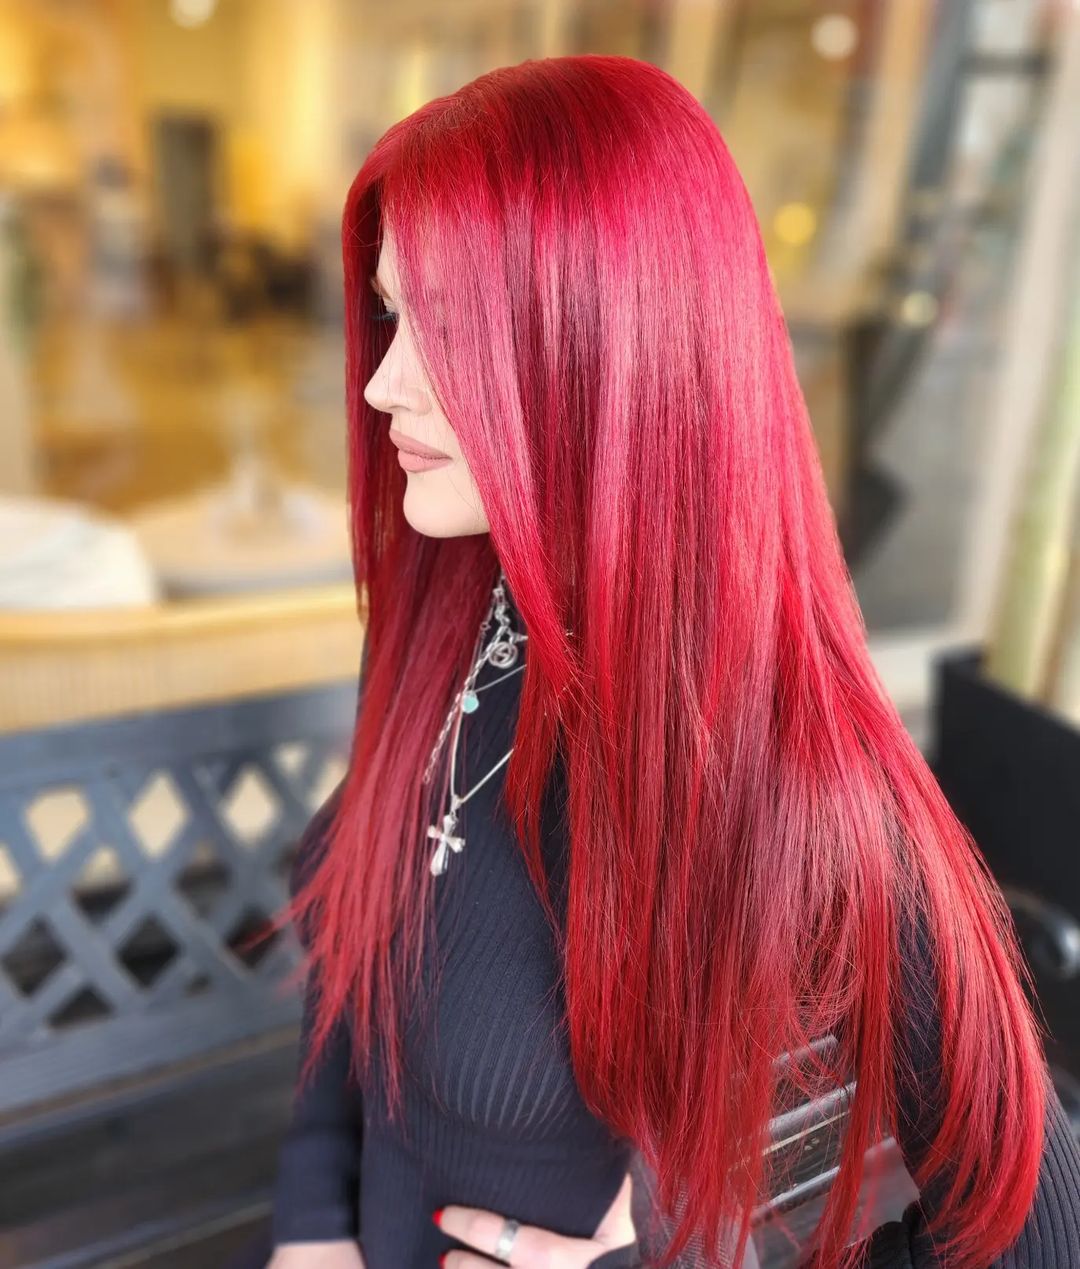 cheveux roux brillants